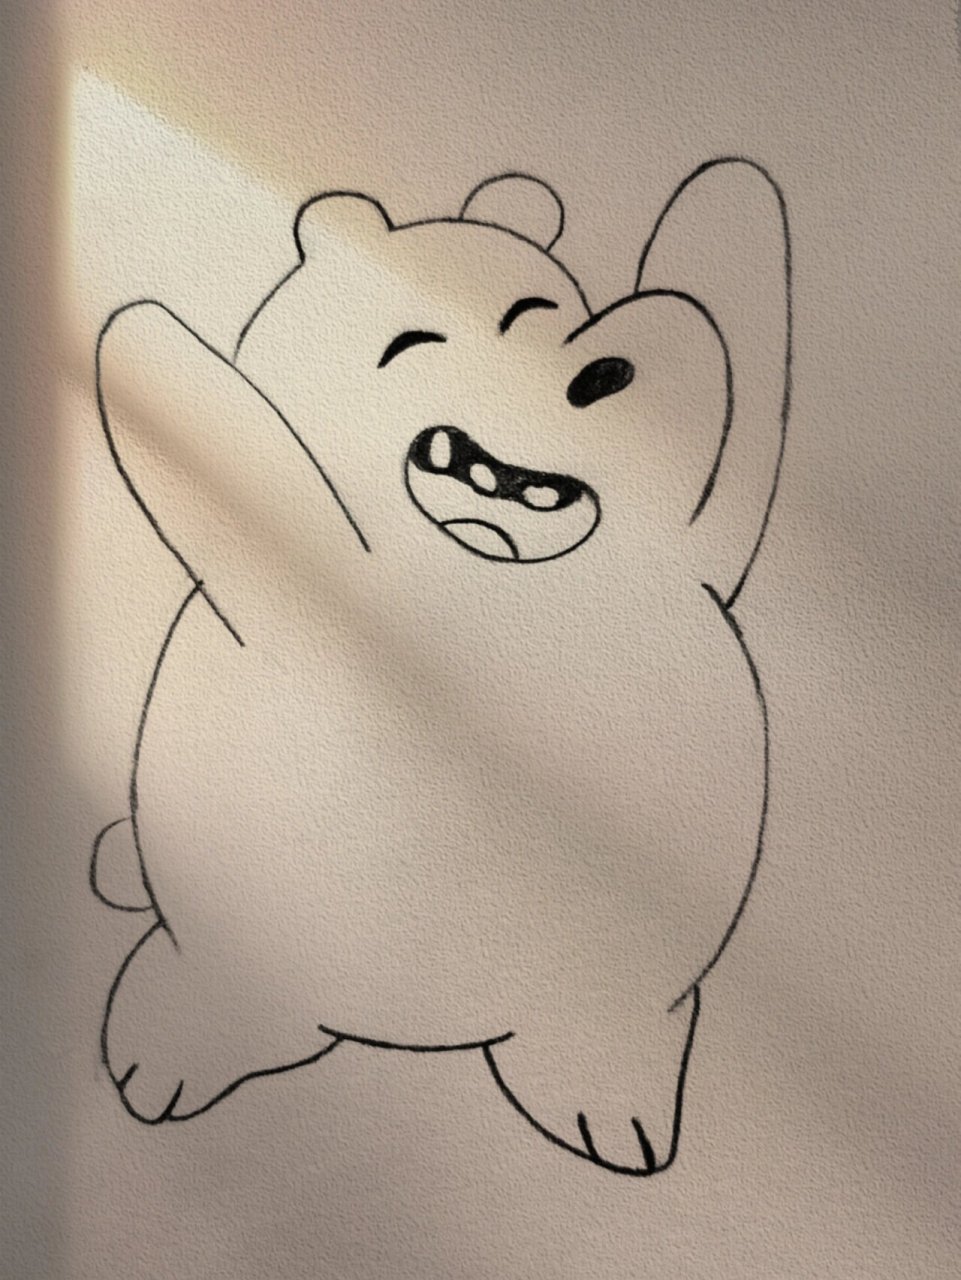 裸熊简笔画 可爱图片